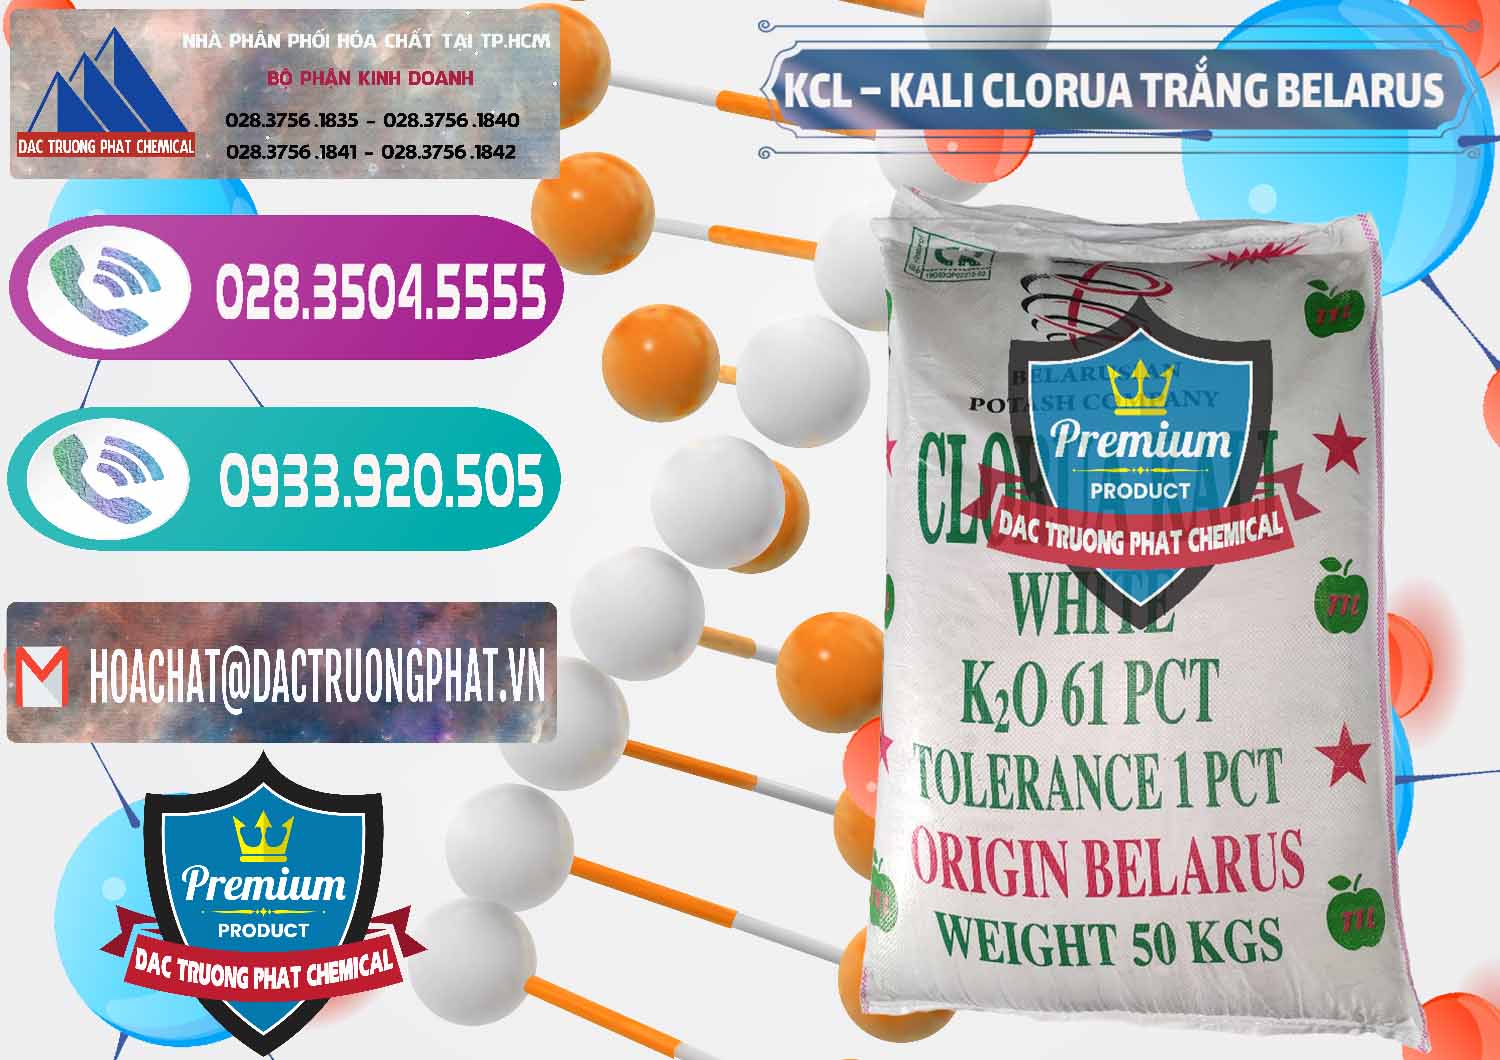 Công ty chuyên cung ứng - bán KCL – Kali Clorua Trắng Belarus - 0085 - Chuyên bán _ phân phối hóa chất tại TP.HCM - hoachatxulynuoc.com